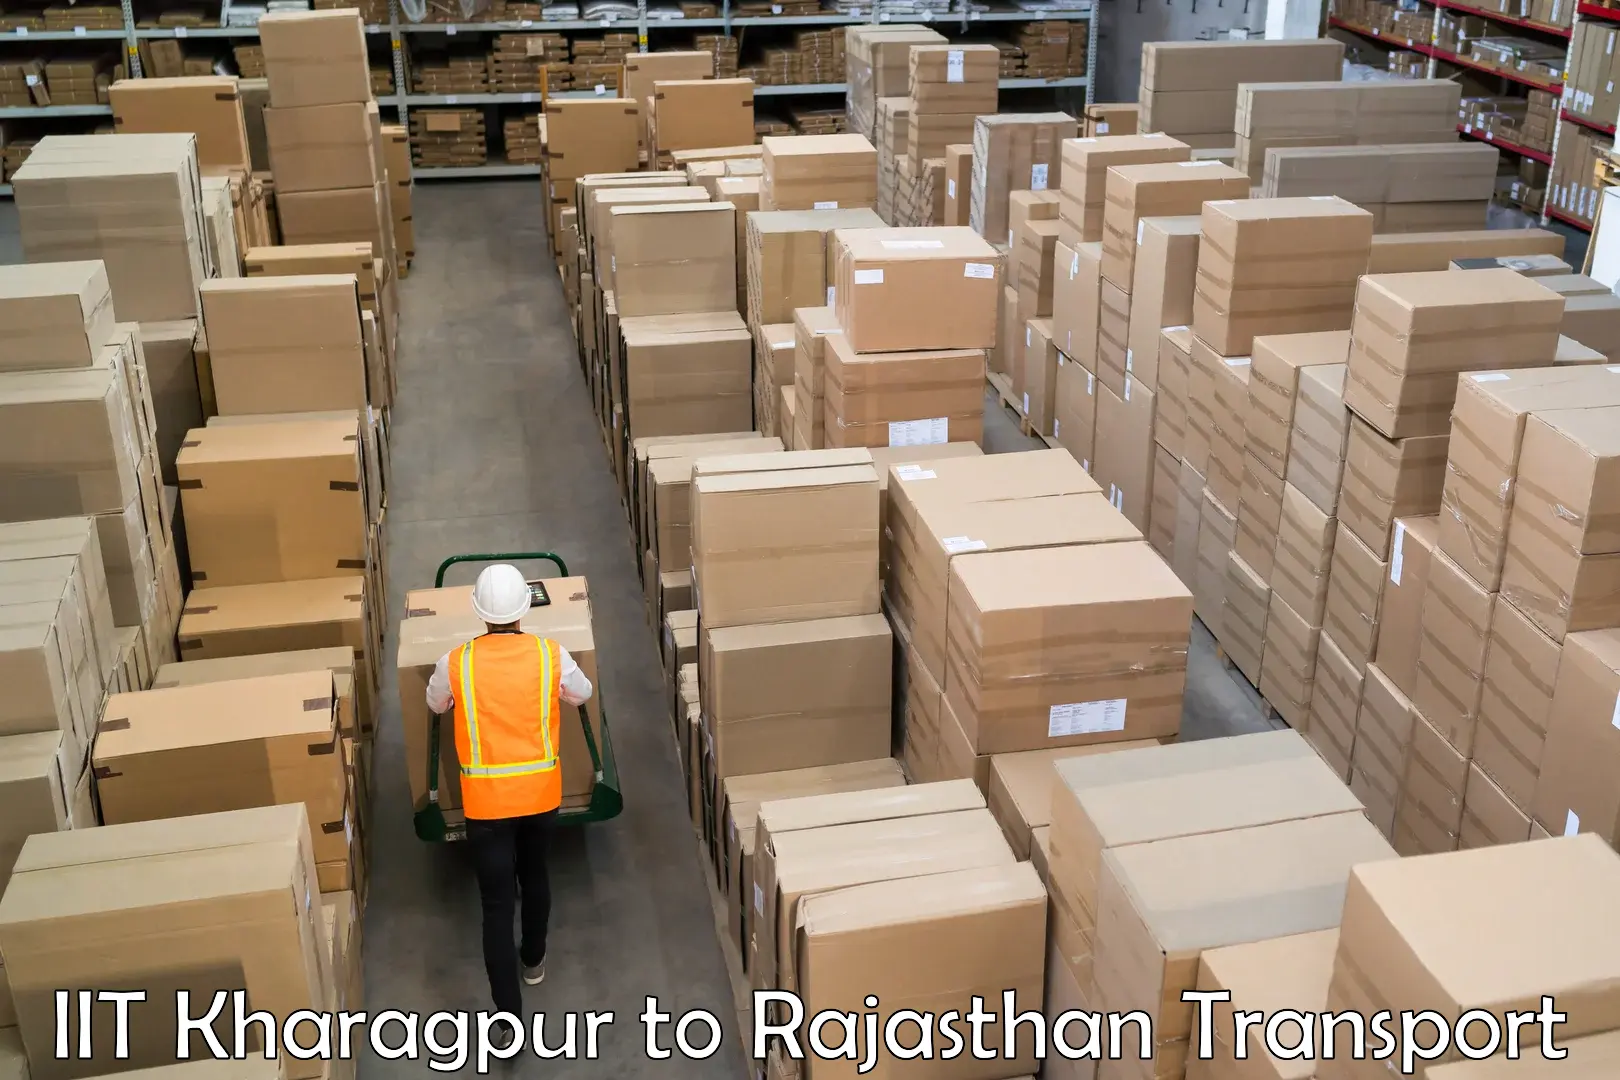 Furniture transport service IIT Kharagpur to Nawalgarh